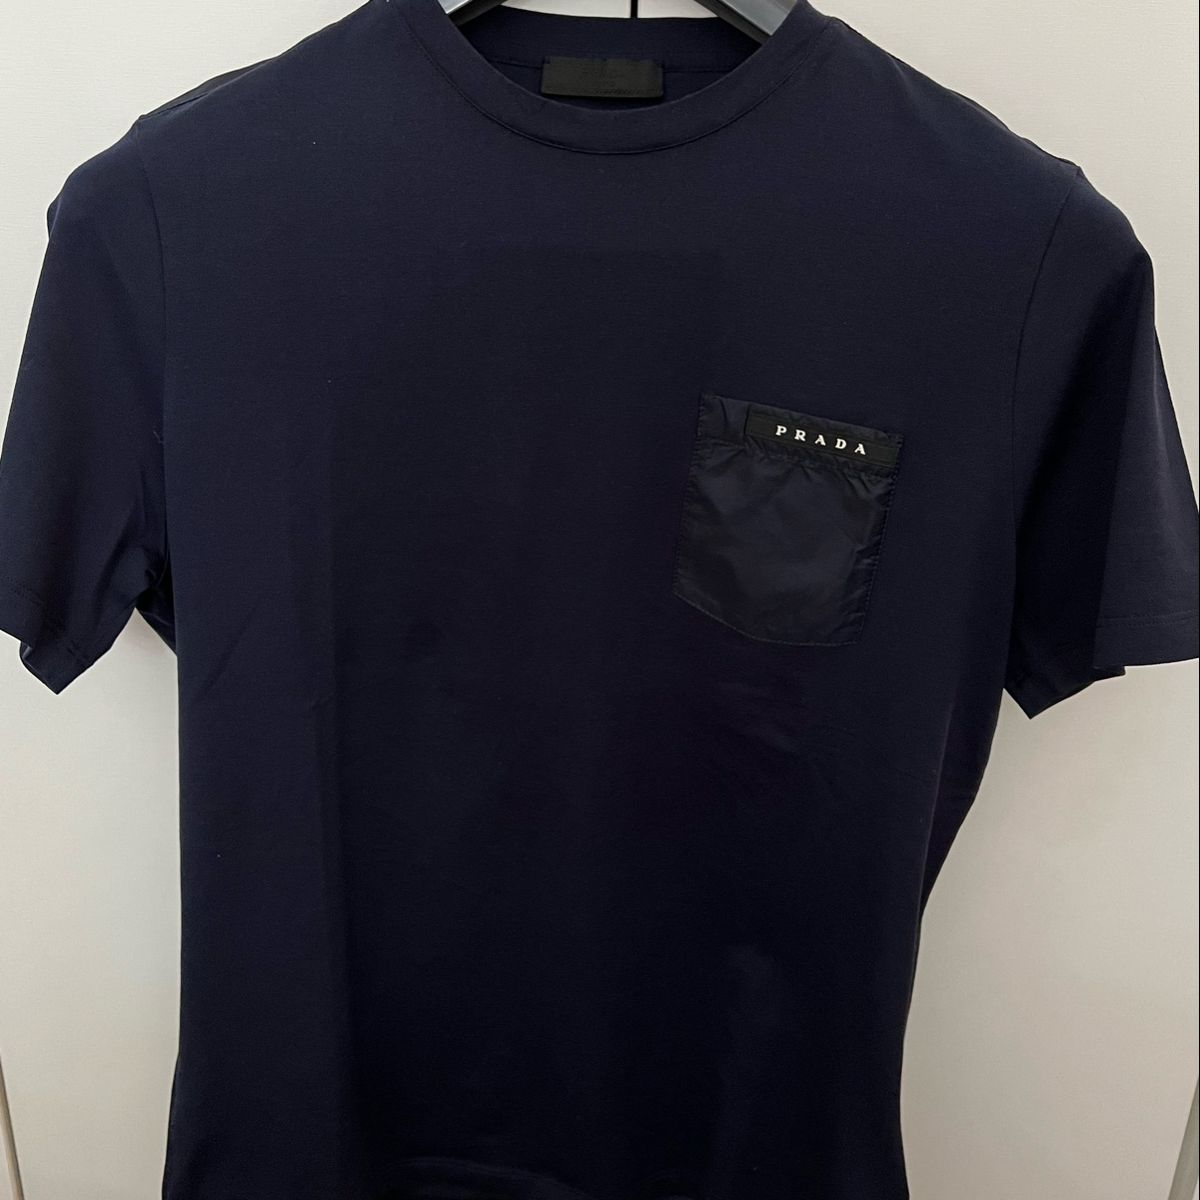 Camiseta Prada com bolso em nylon na cor Azul marinho